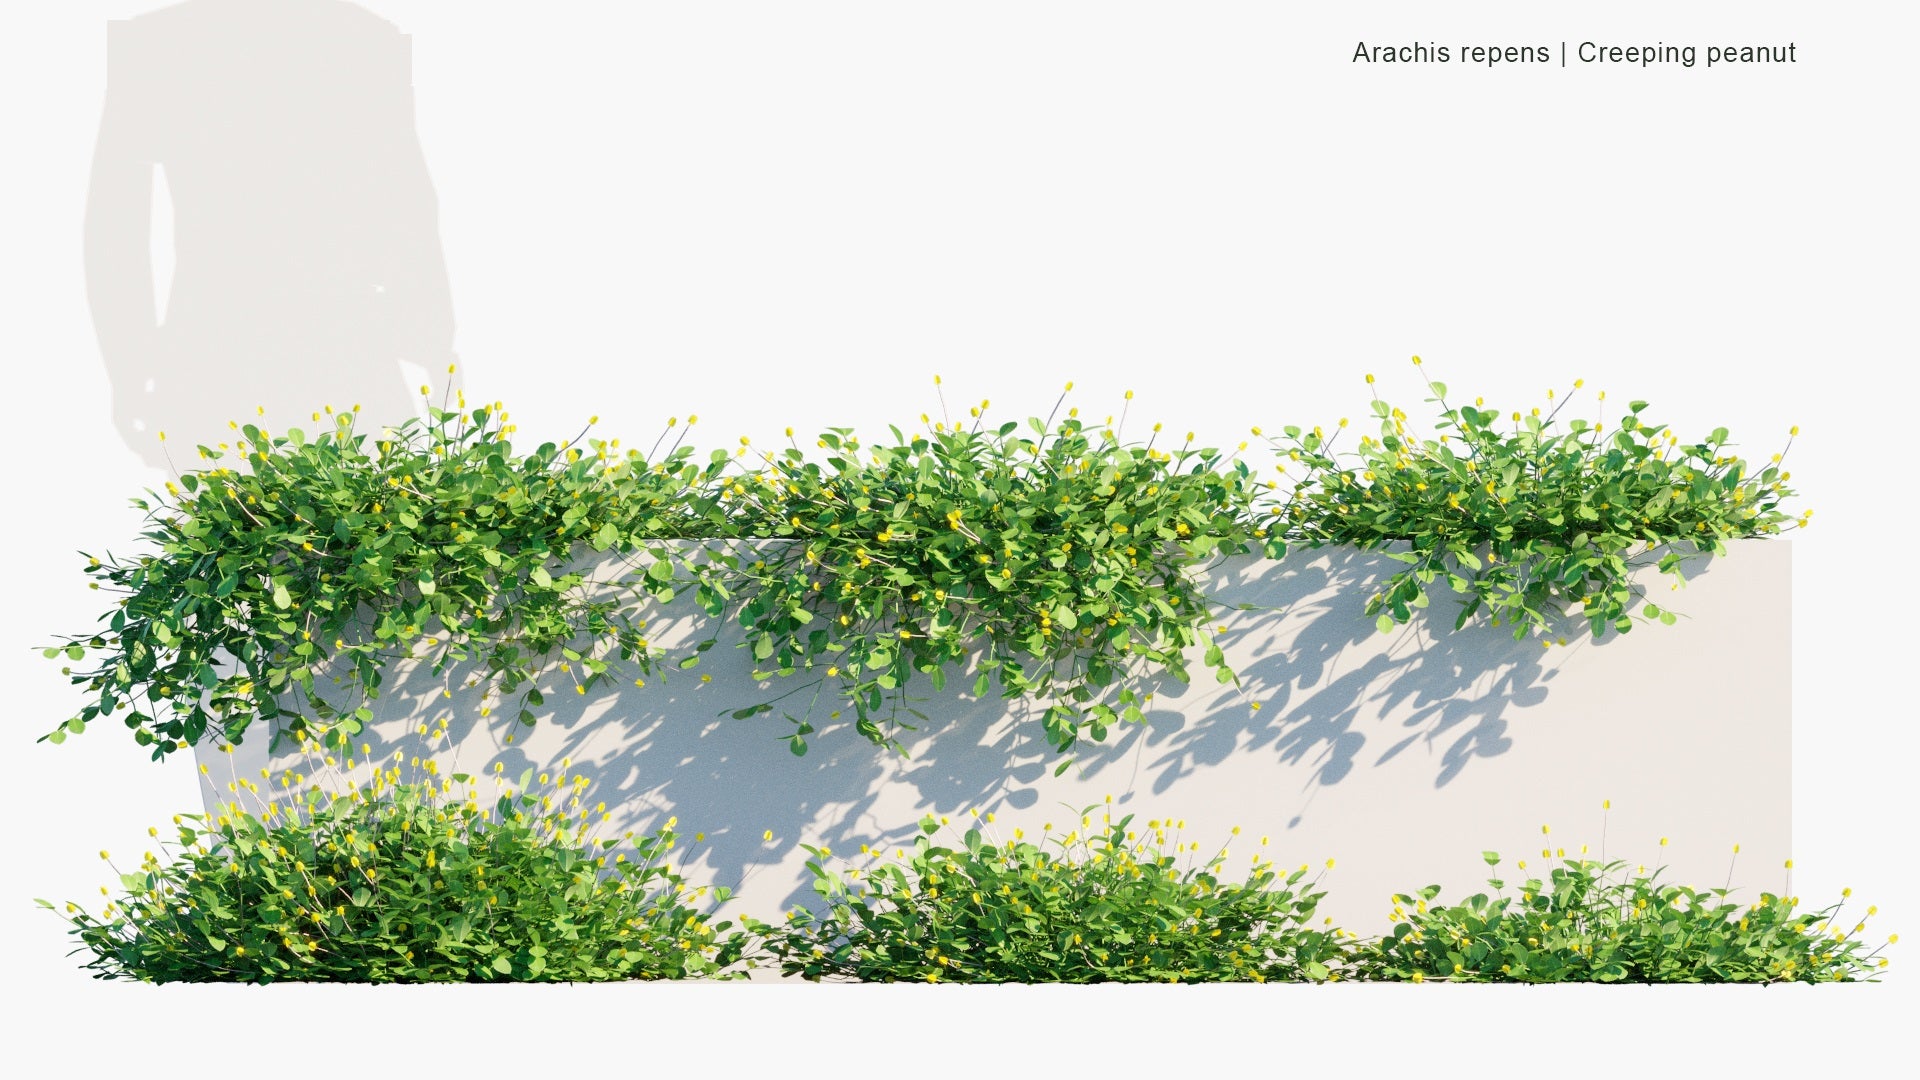 Low Poly Arachis Repens - Grama-Amendoim, Peanut Grass (3D Model)